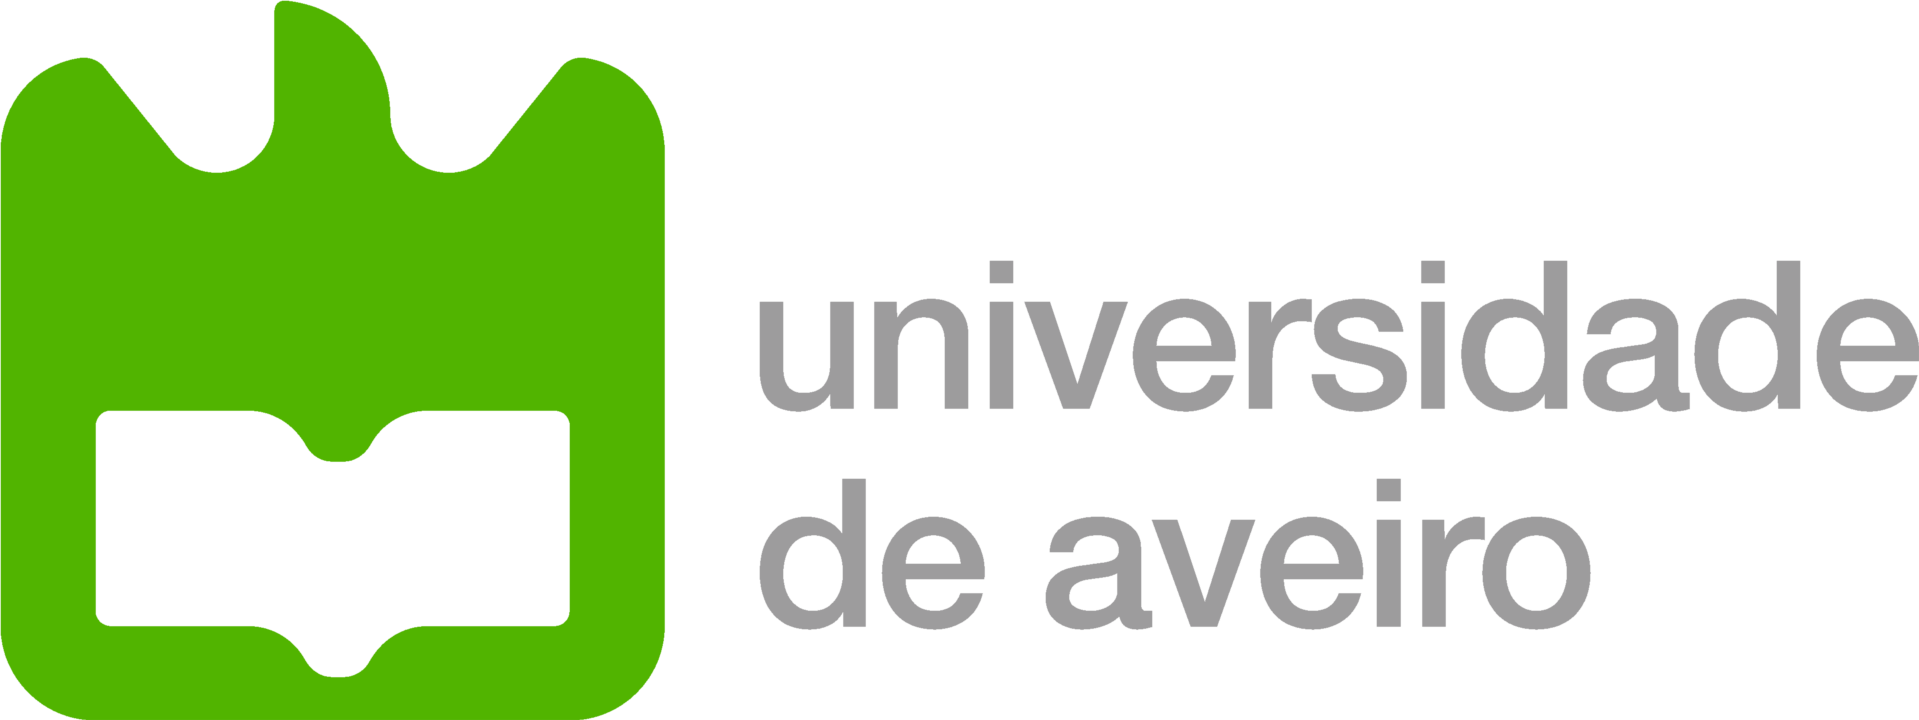 university-aveiro